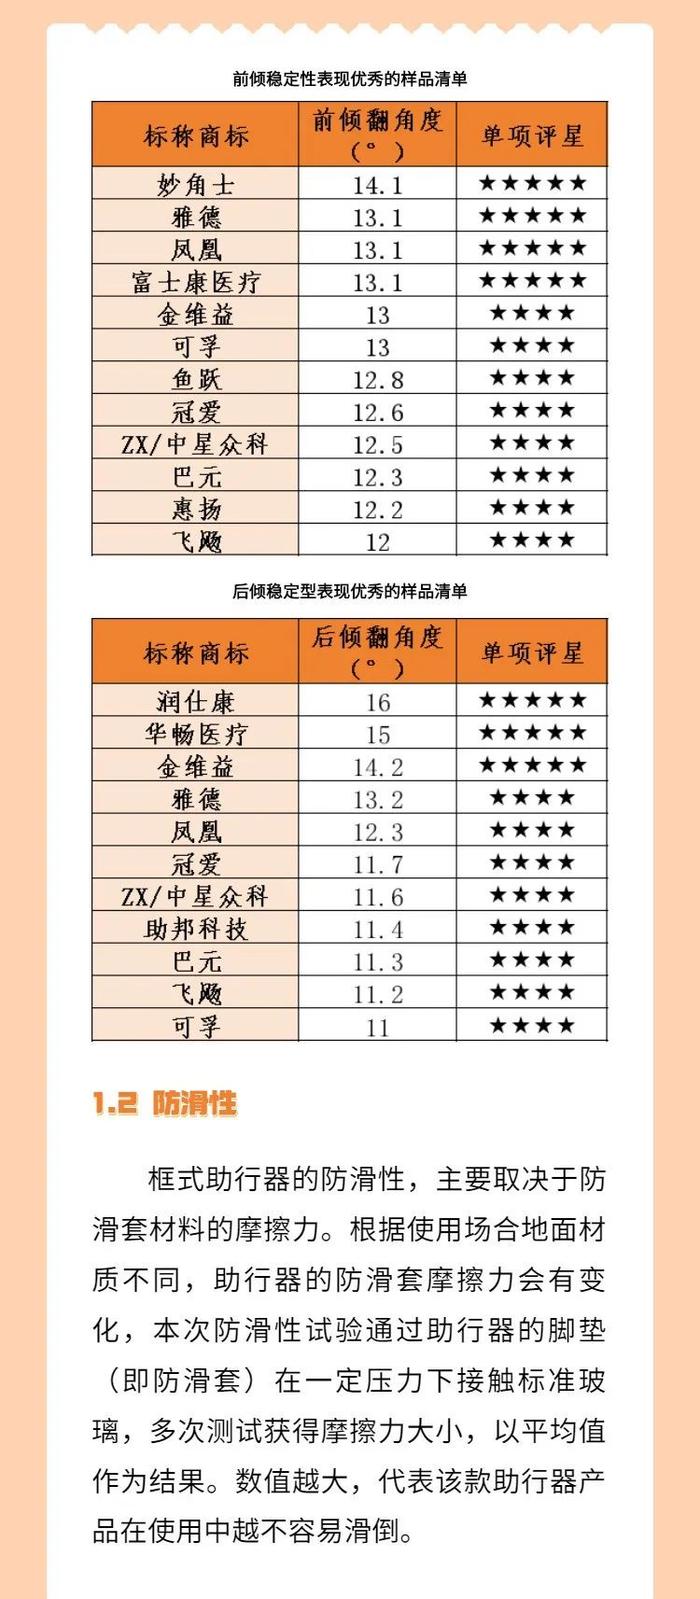 如何选择合适的框式助行器？杭州市消保委发布消费比较试验报告